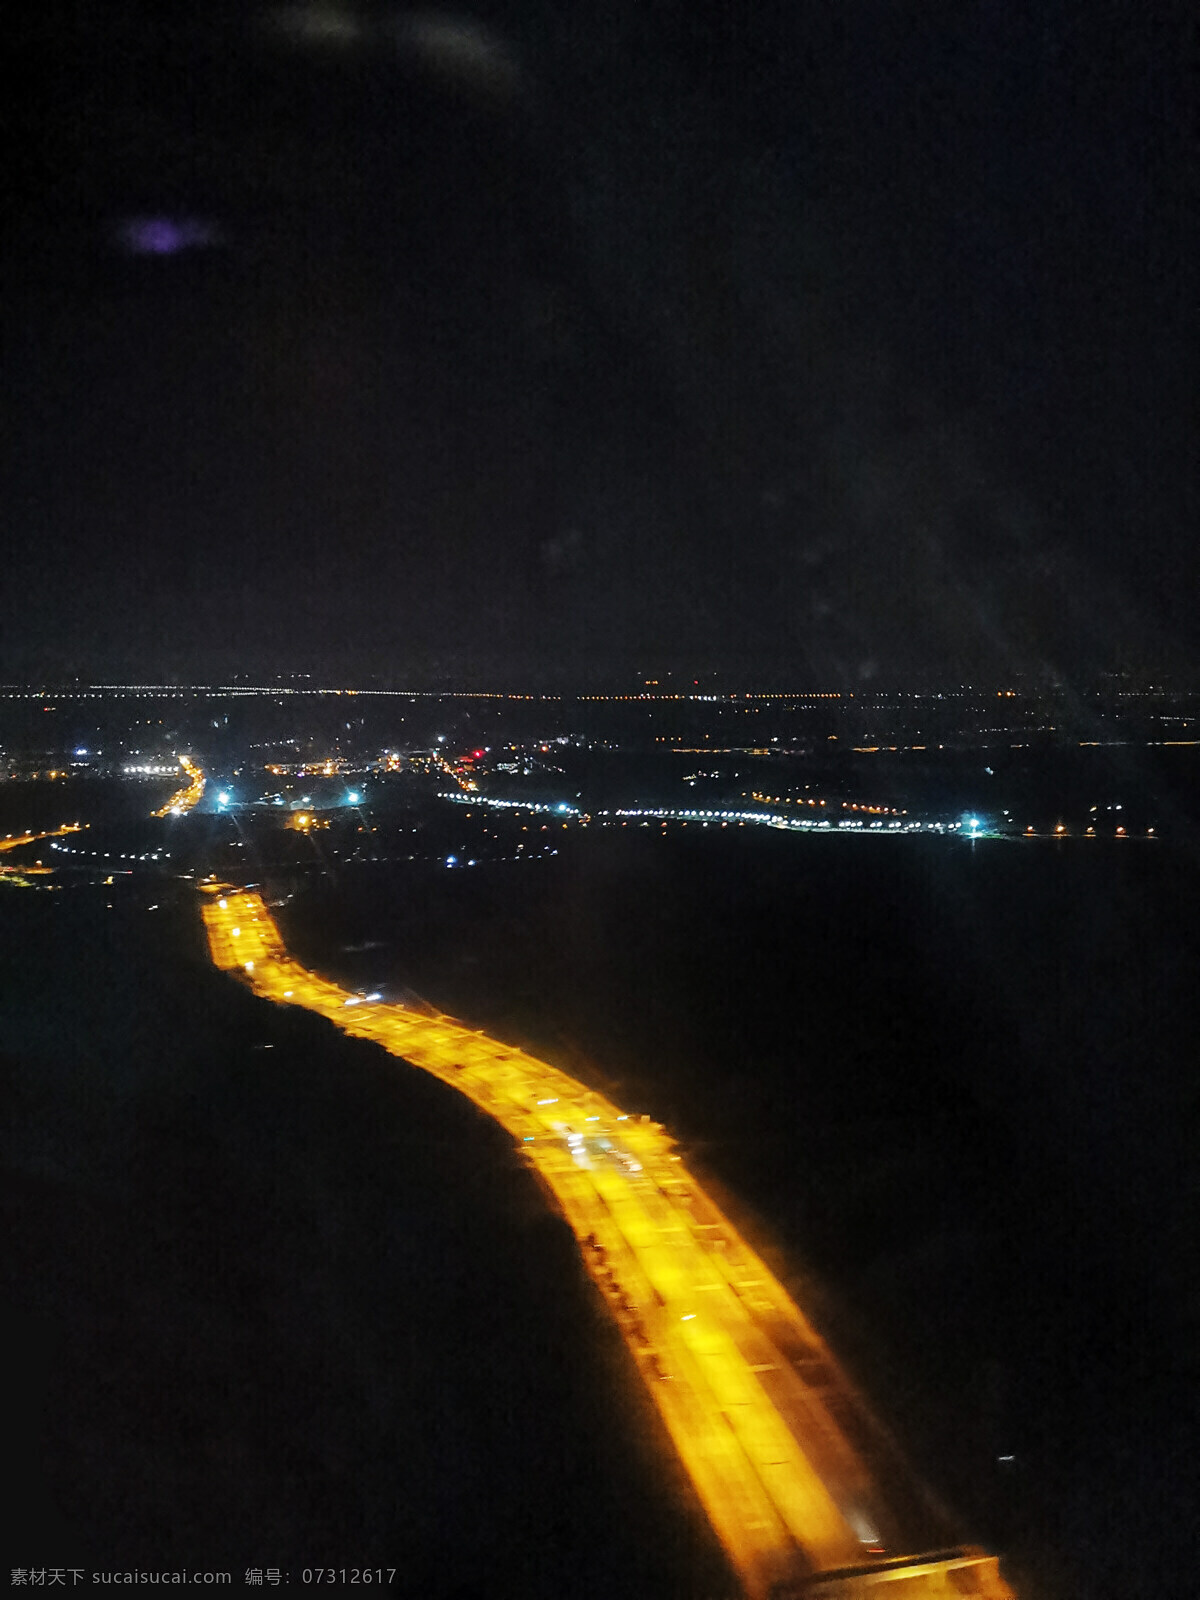 夜景 飞机 机场 高空 俯瞰 月亮 月光 夜灯 华丽 繁华 都市 炫丽 路灯 街灯 夜晚 城市 发展 现代化 风景 旅游摄影 国内旅游